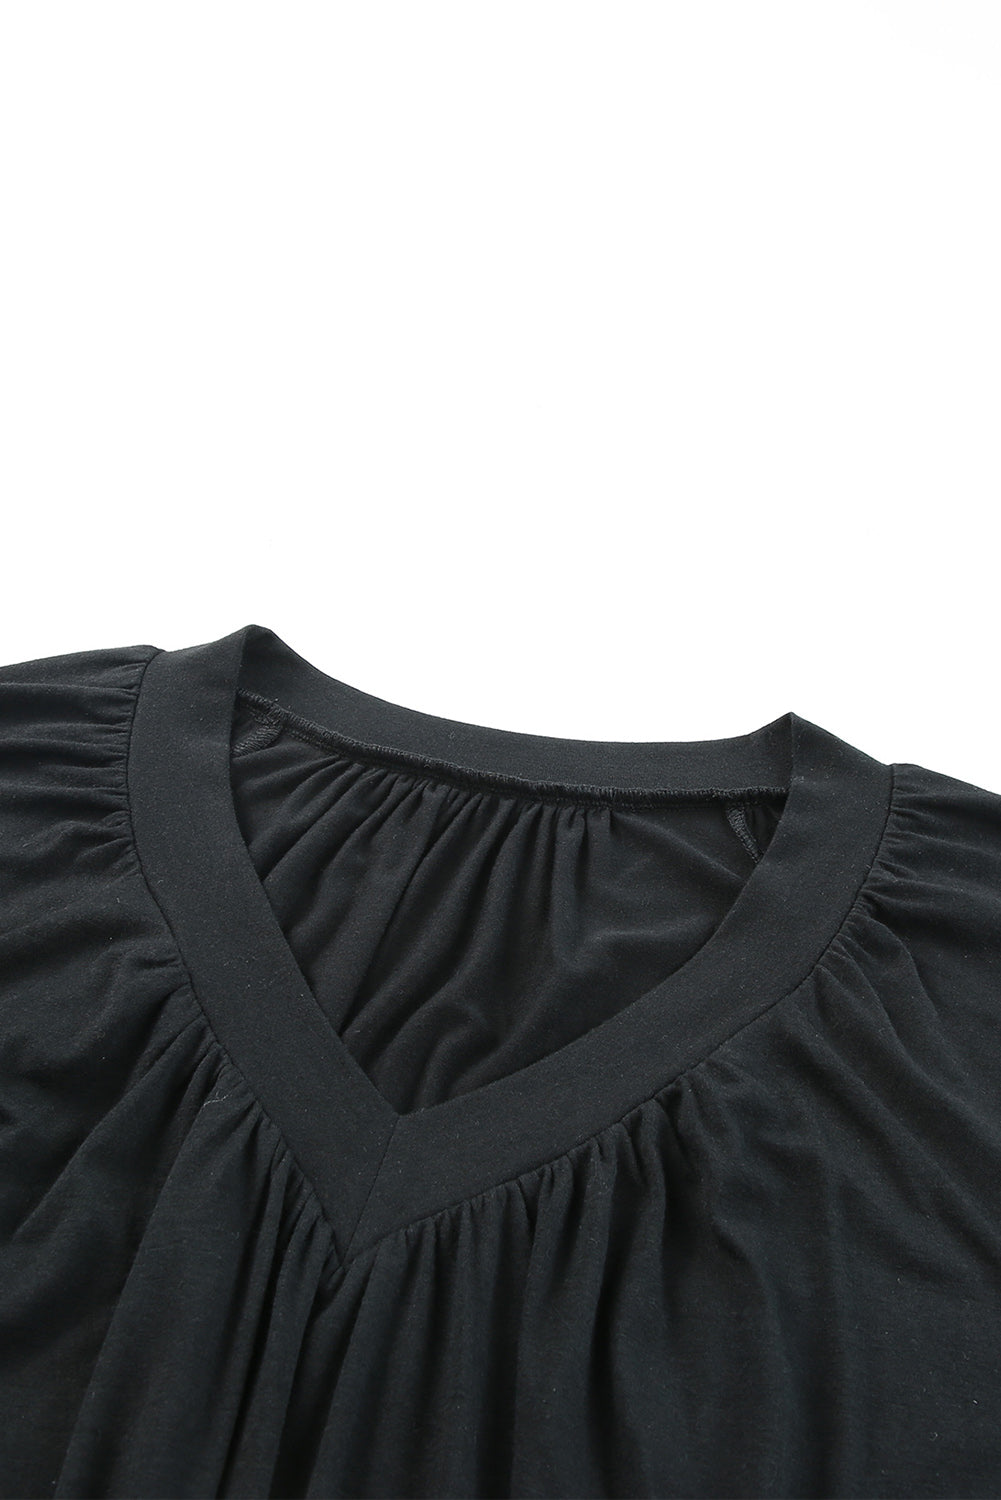 Black V Neck Shirring Short Sleeve Top Pre Order Tops JT's Designer Fashion